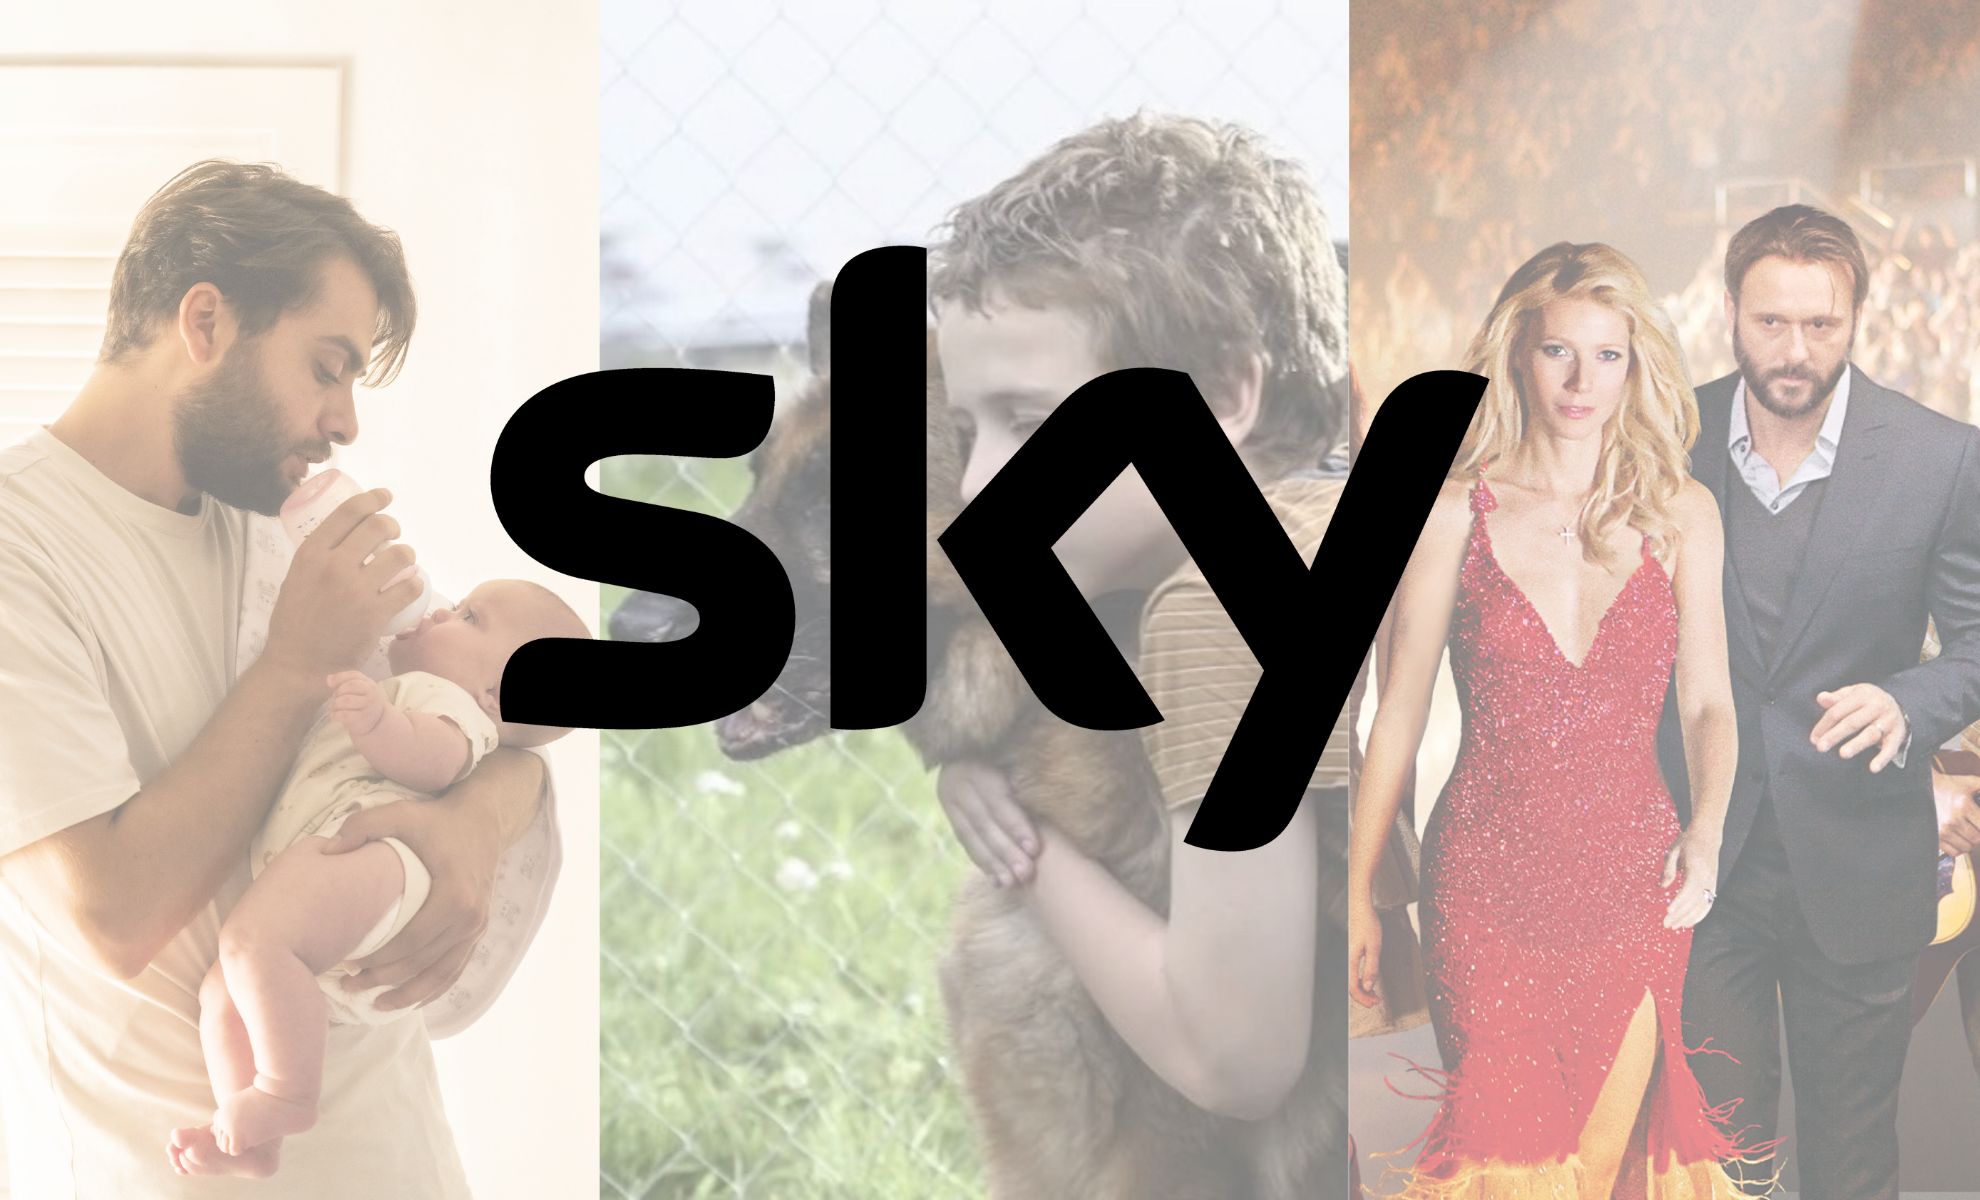 Stasera su Sky : intrighi, azione e storie vere che ti lasceranno senza fiato